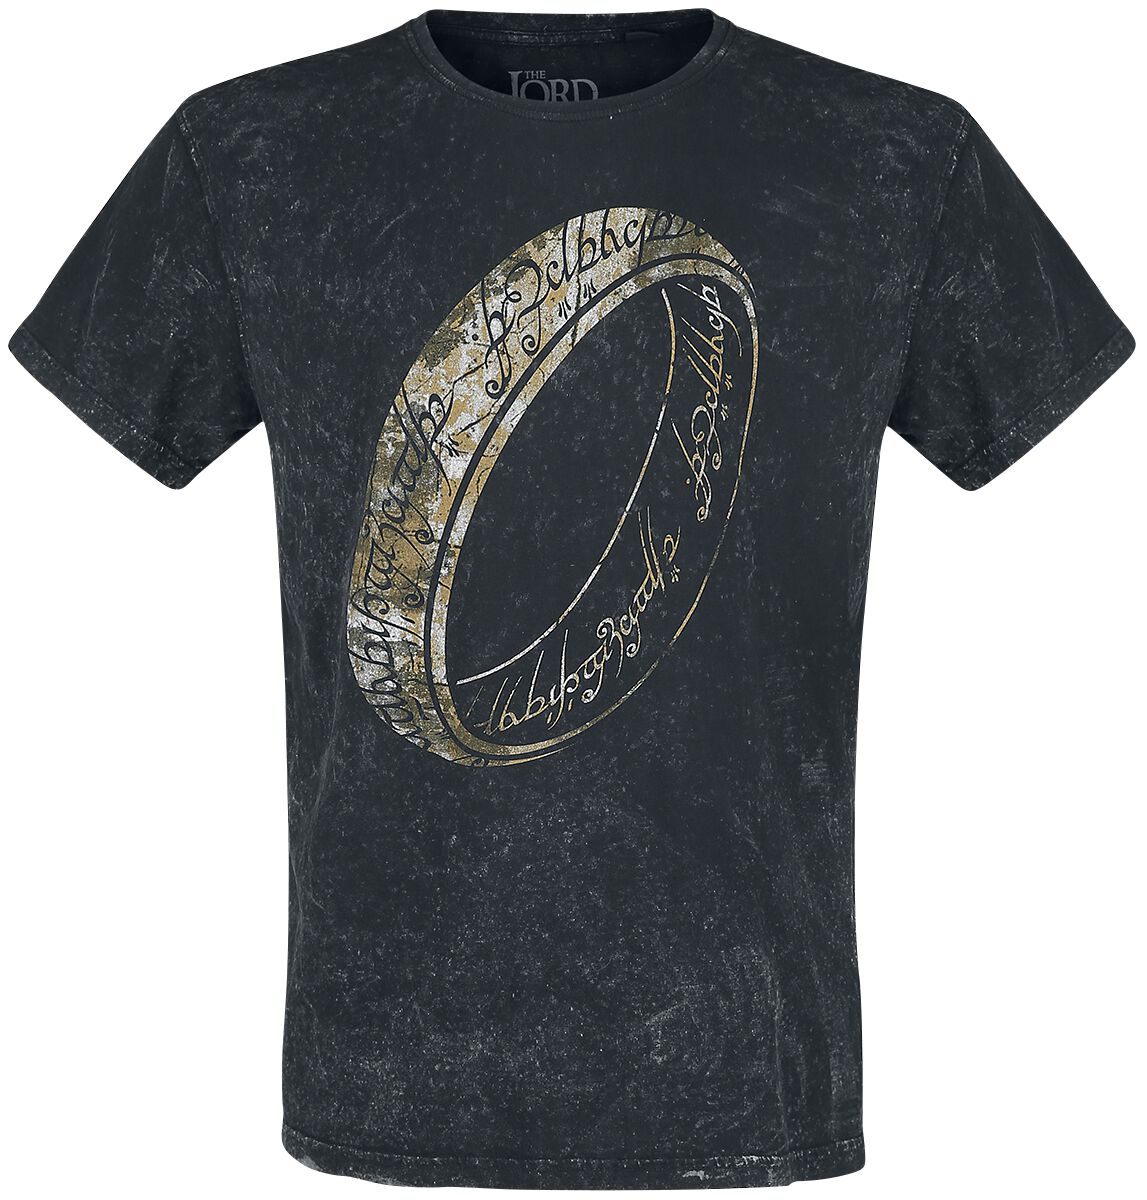 Der Herr der Ringe One Ring To Rule Them All T-Shirt schwarz in XL